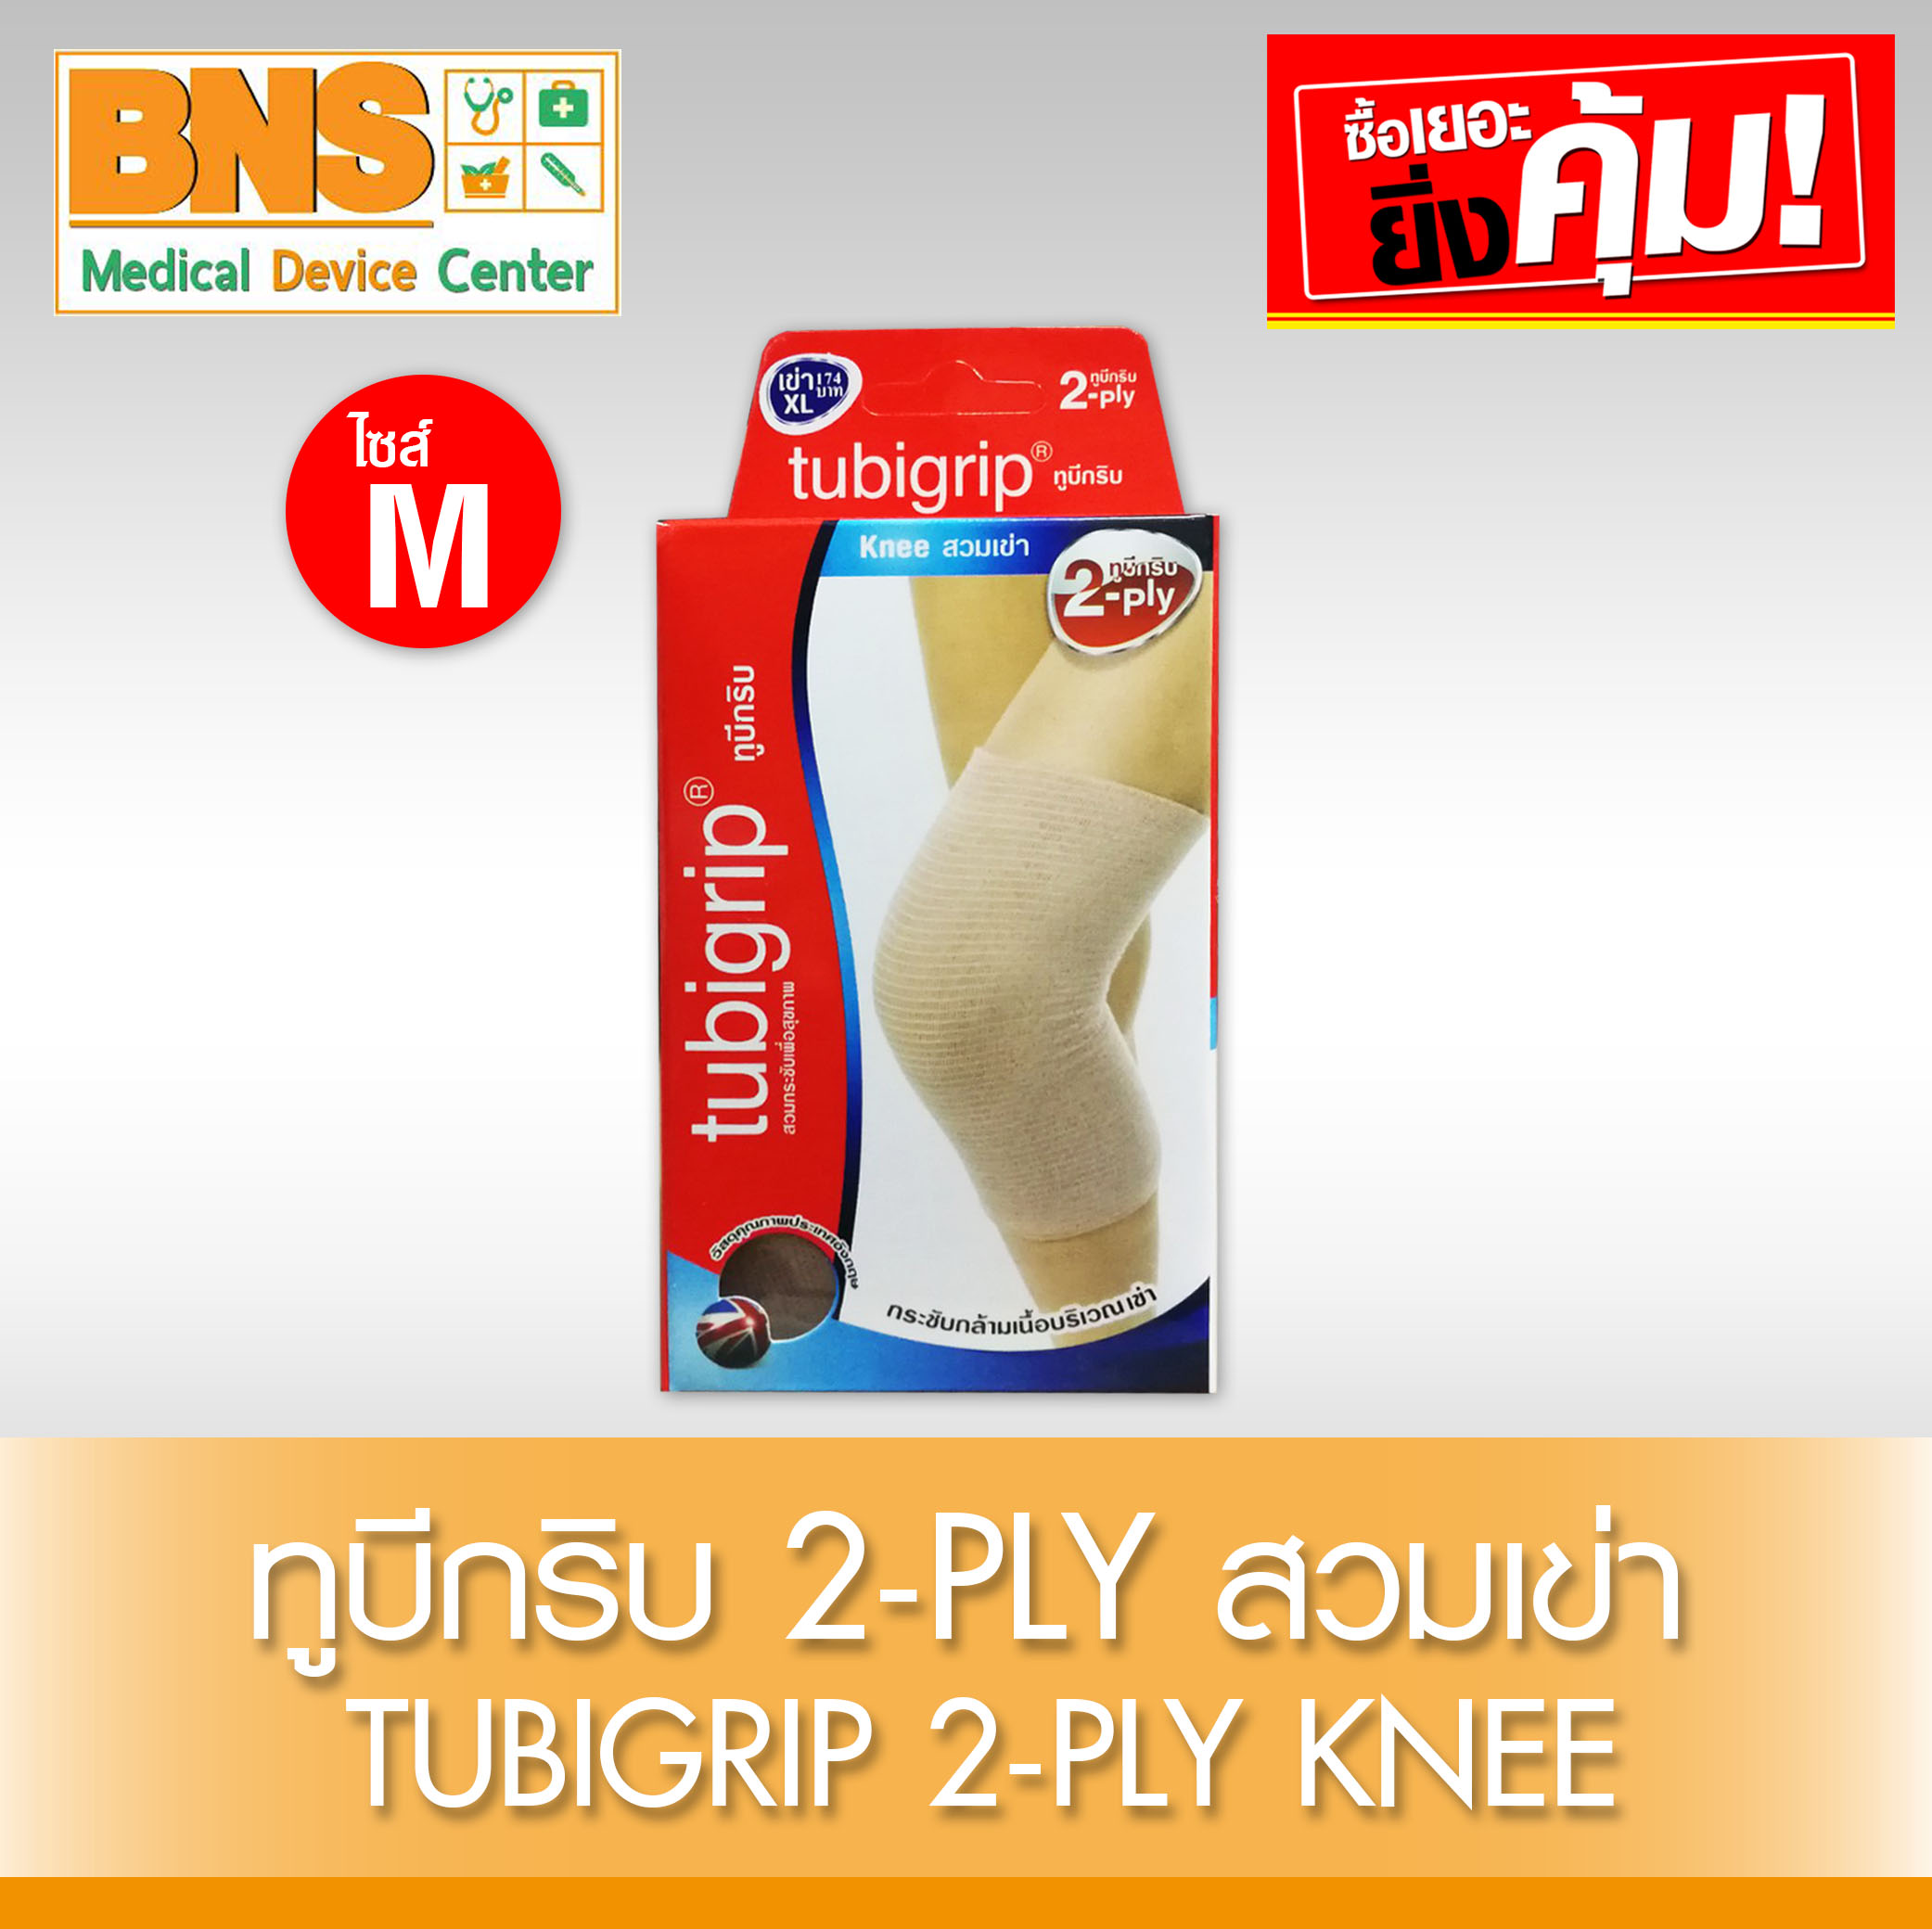 Tubigrip 2-Ply Knee สวมเข่า ไซร้ M (สินค้าใหม่) (ถูกที่สุด) By BNS